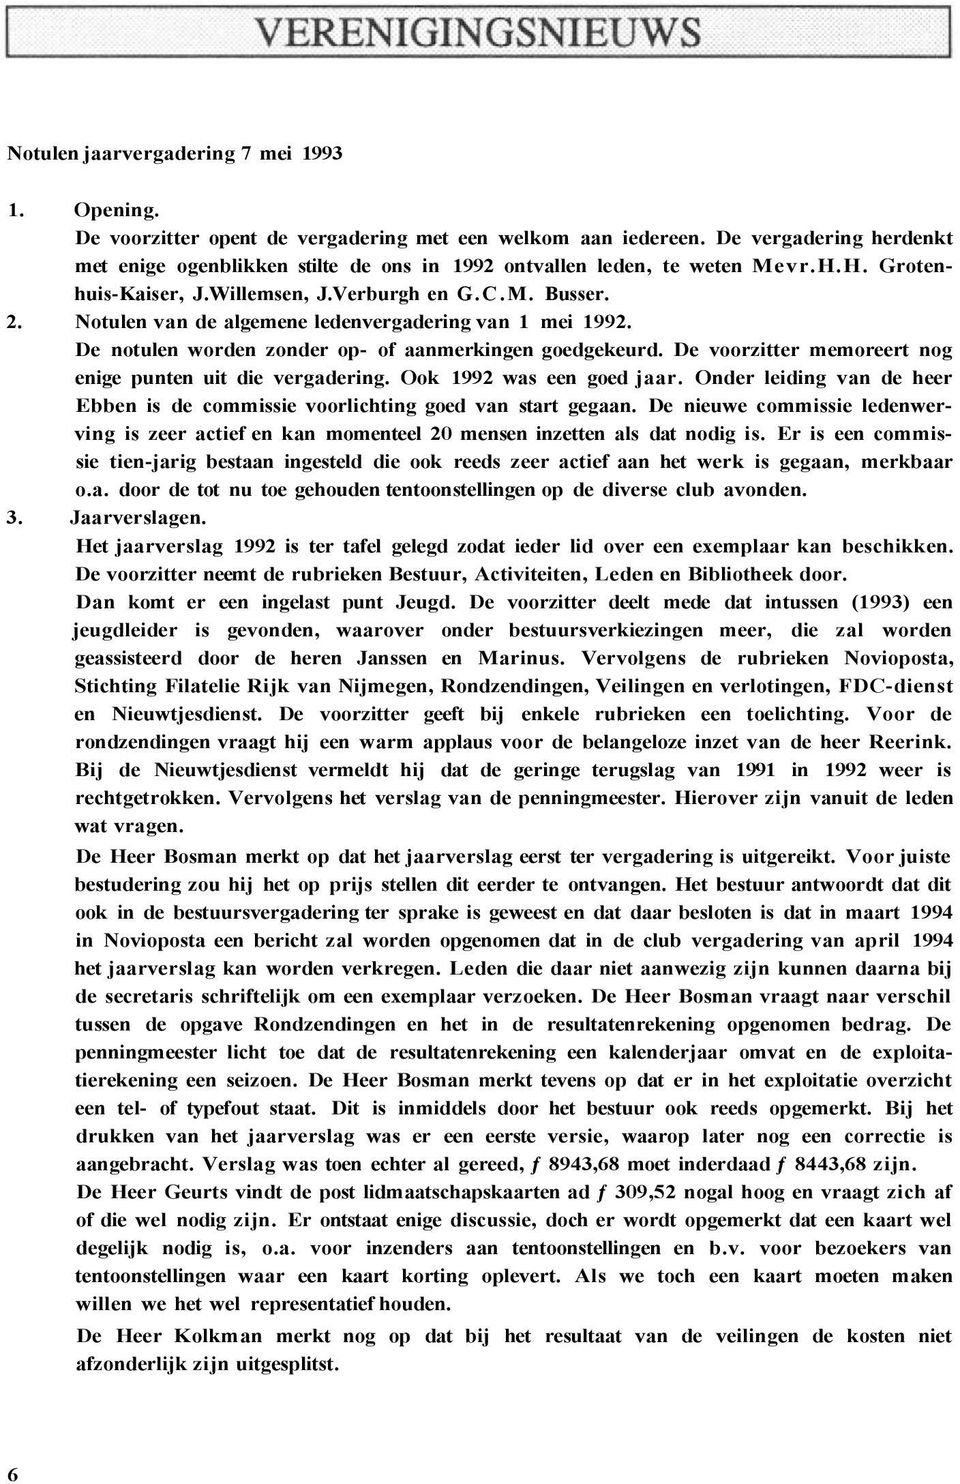 Notulen van de algemene ledenvergadering van 1 mei 1992. De notulen worden zonder op- of aanmerkingen goedgekeurd. De voorzitter memoreert nog enige punten uit die vergadering.